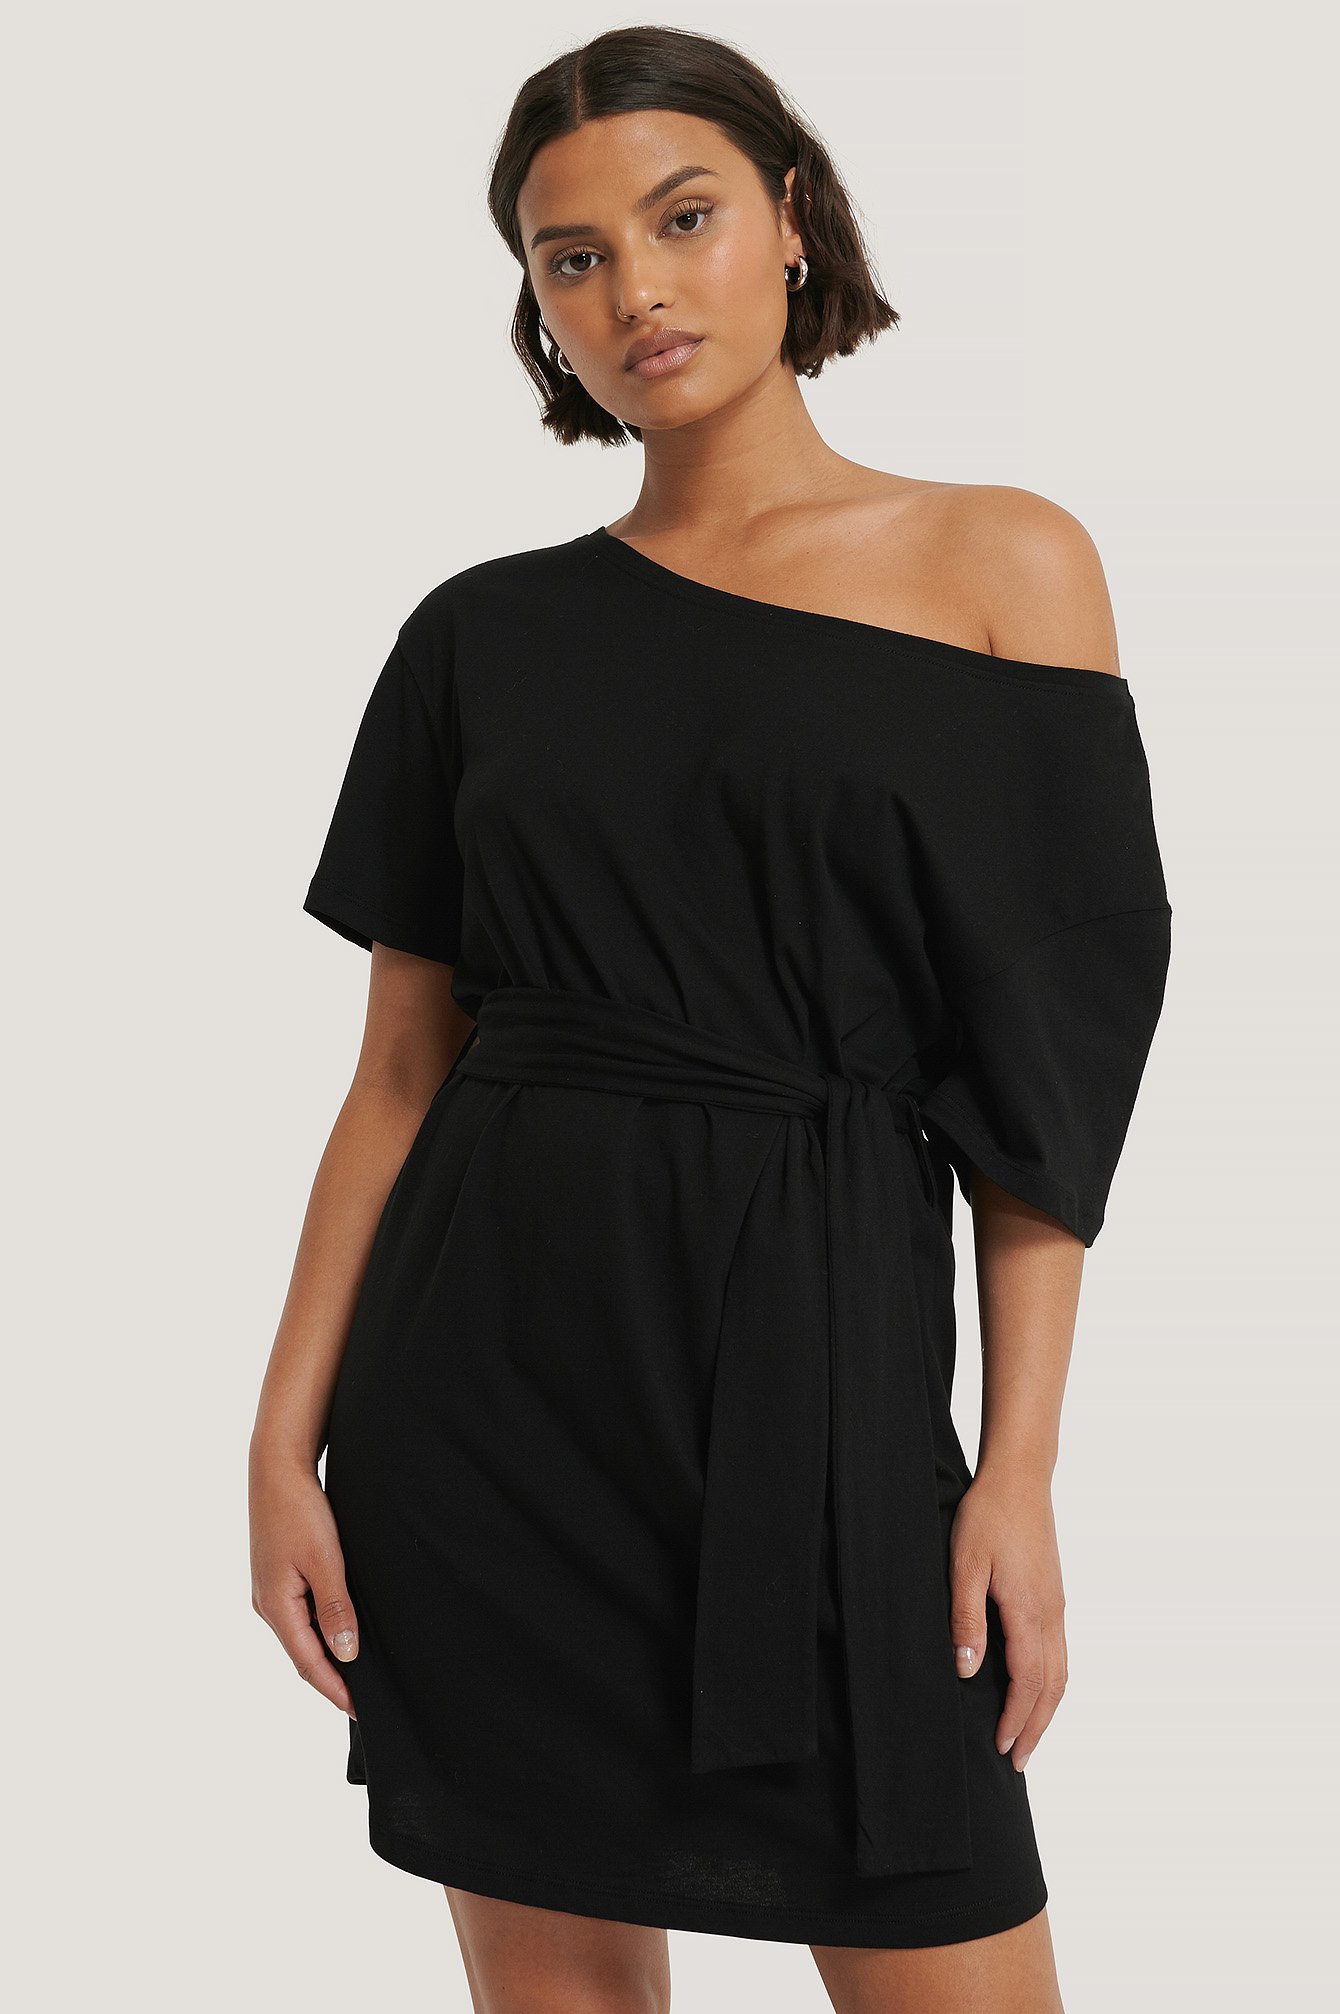 Black Einseitig Schulterfreies T-Shirt-Kleid Mit Gürtel